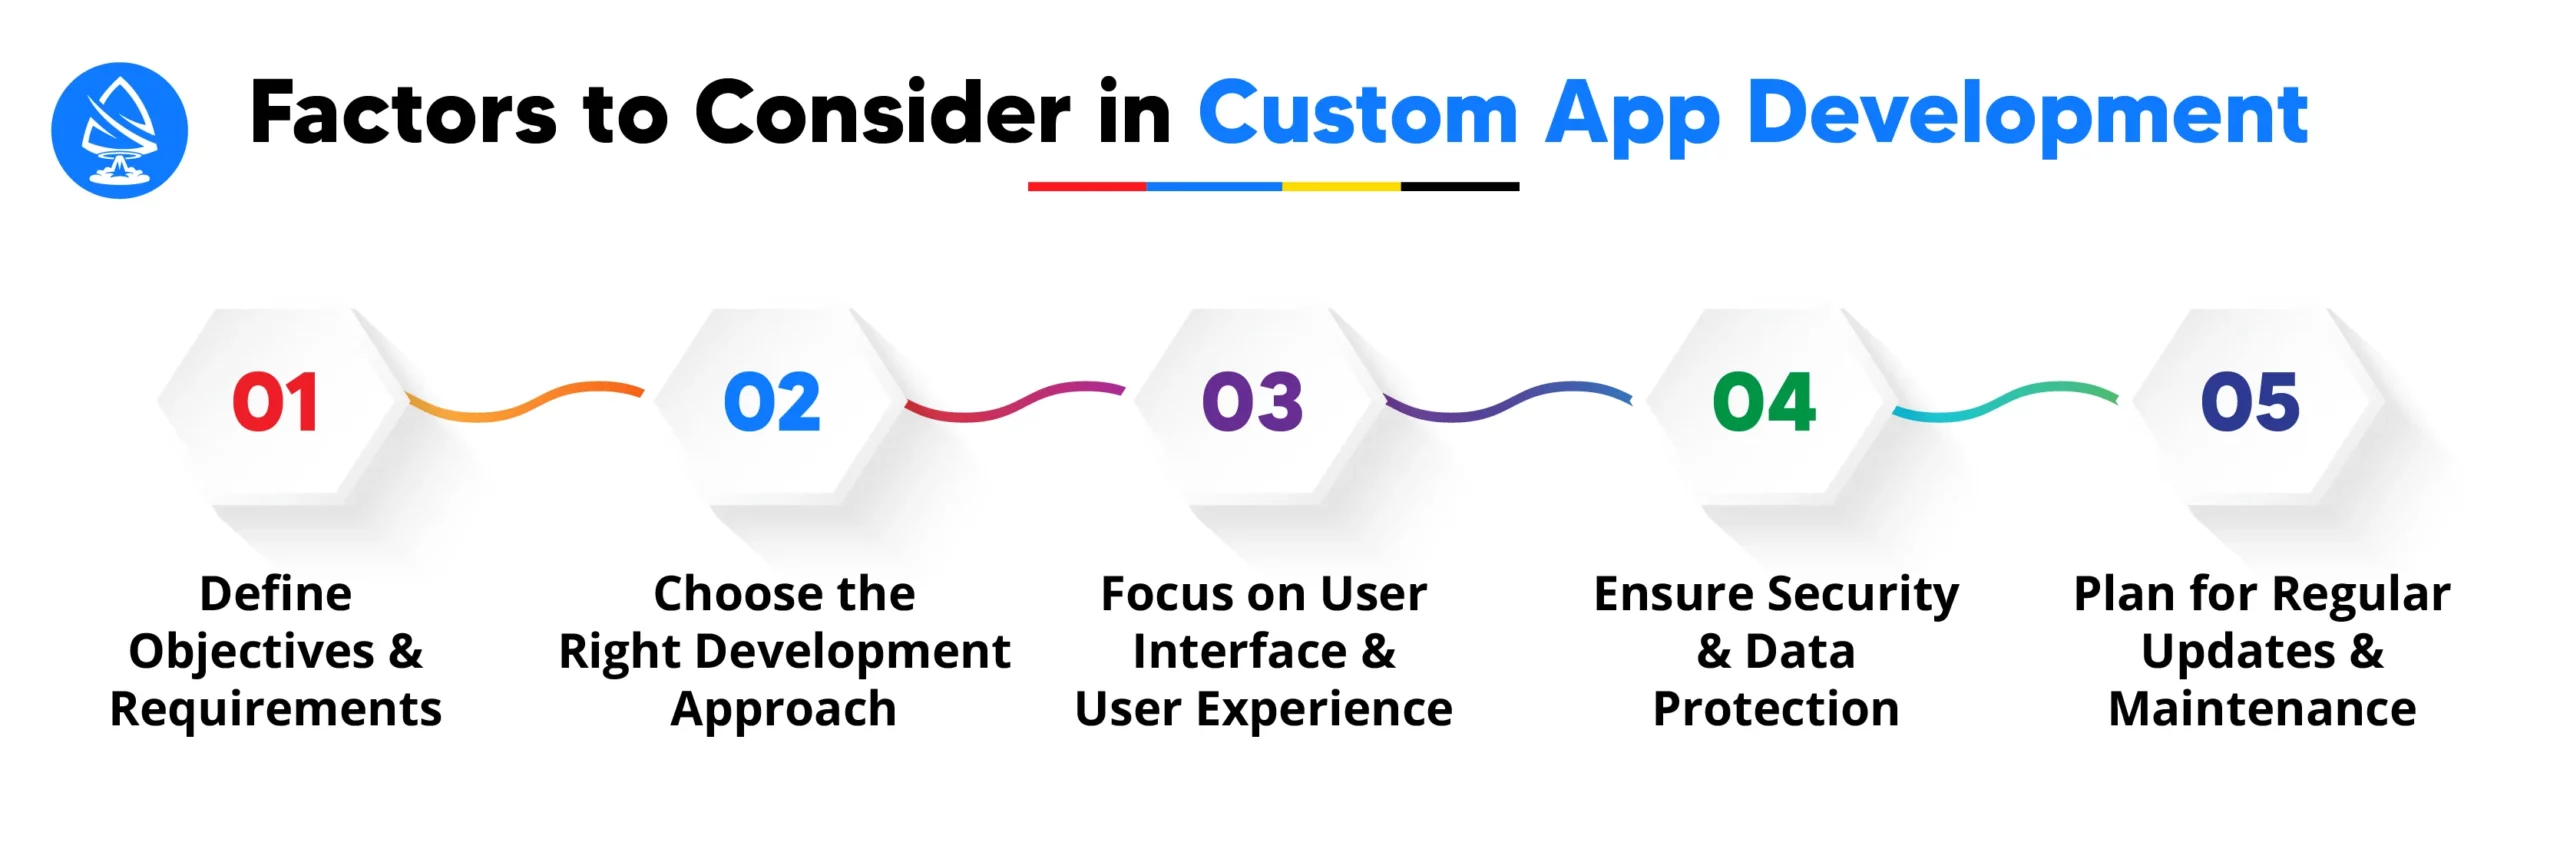 Factors to Consider in Custom App Development